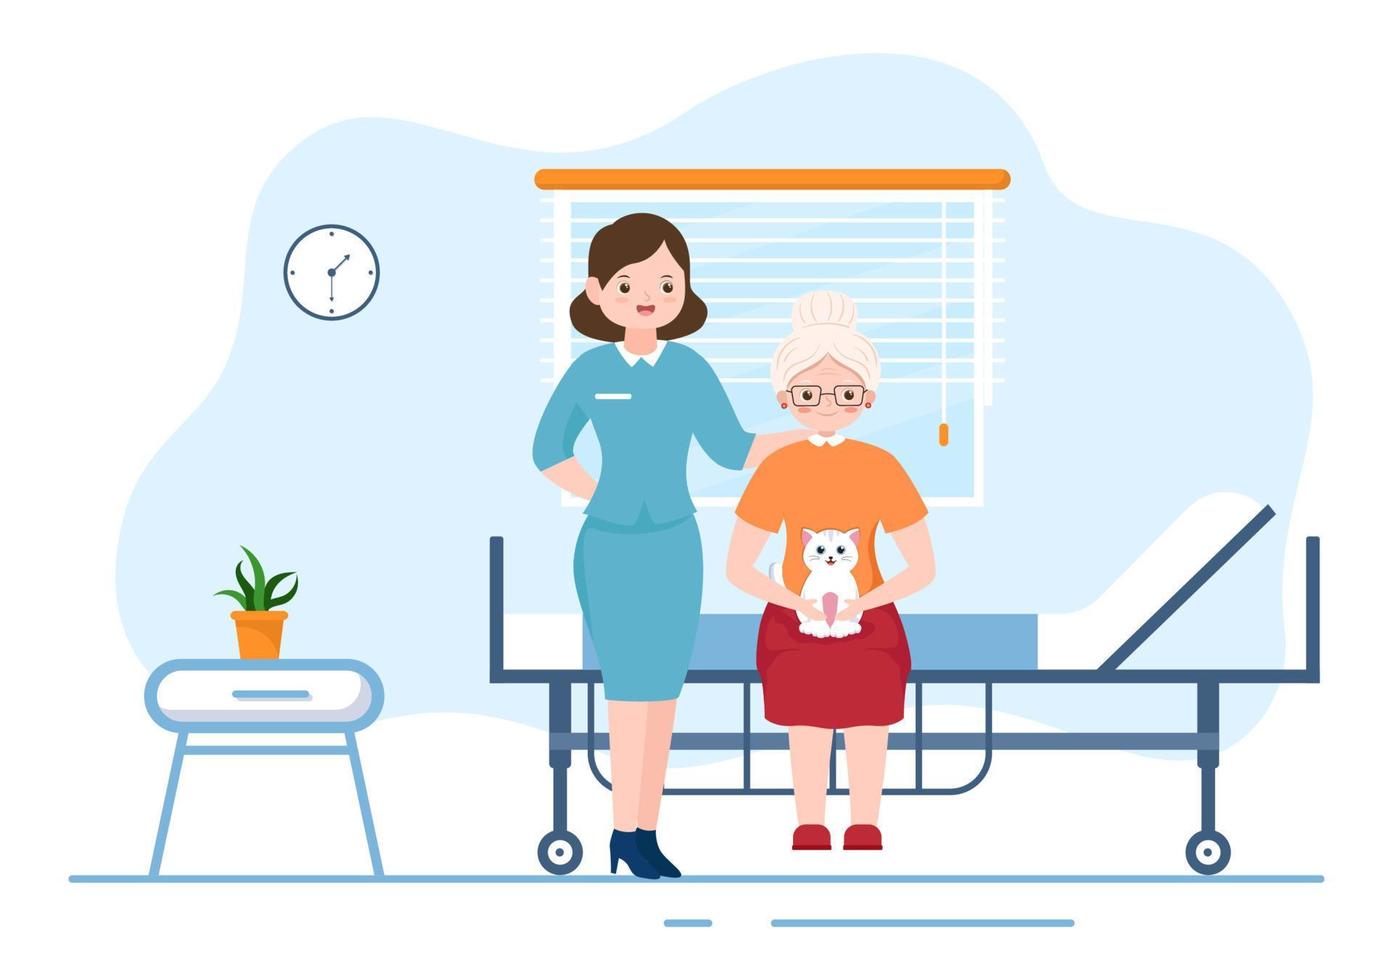 illustrazione piatta del fumetto disegnato a mano dei servizi di assistenza agli anziani con il caregiver, la casa di cura, la vita assistita e il design di supporto vettore